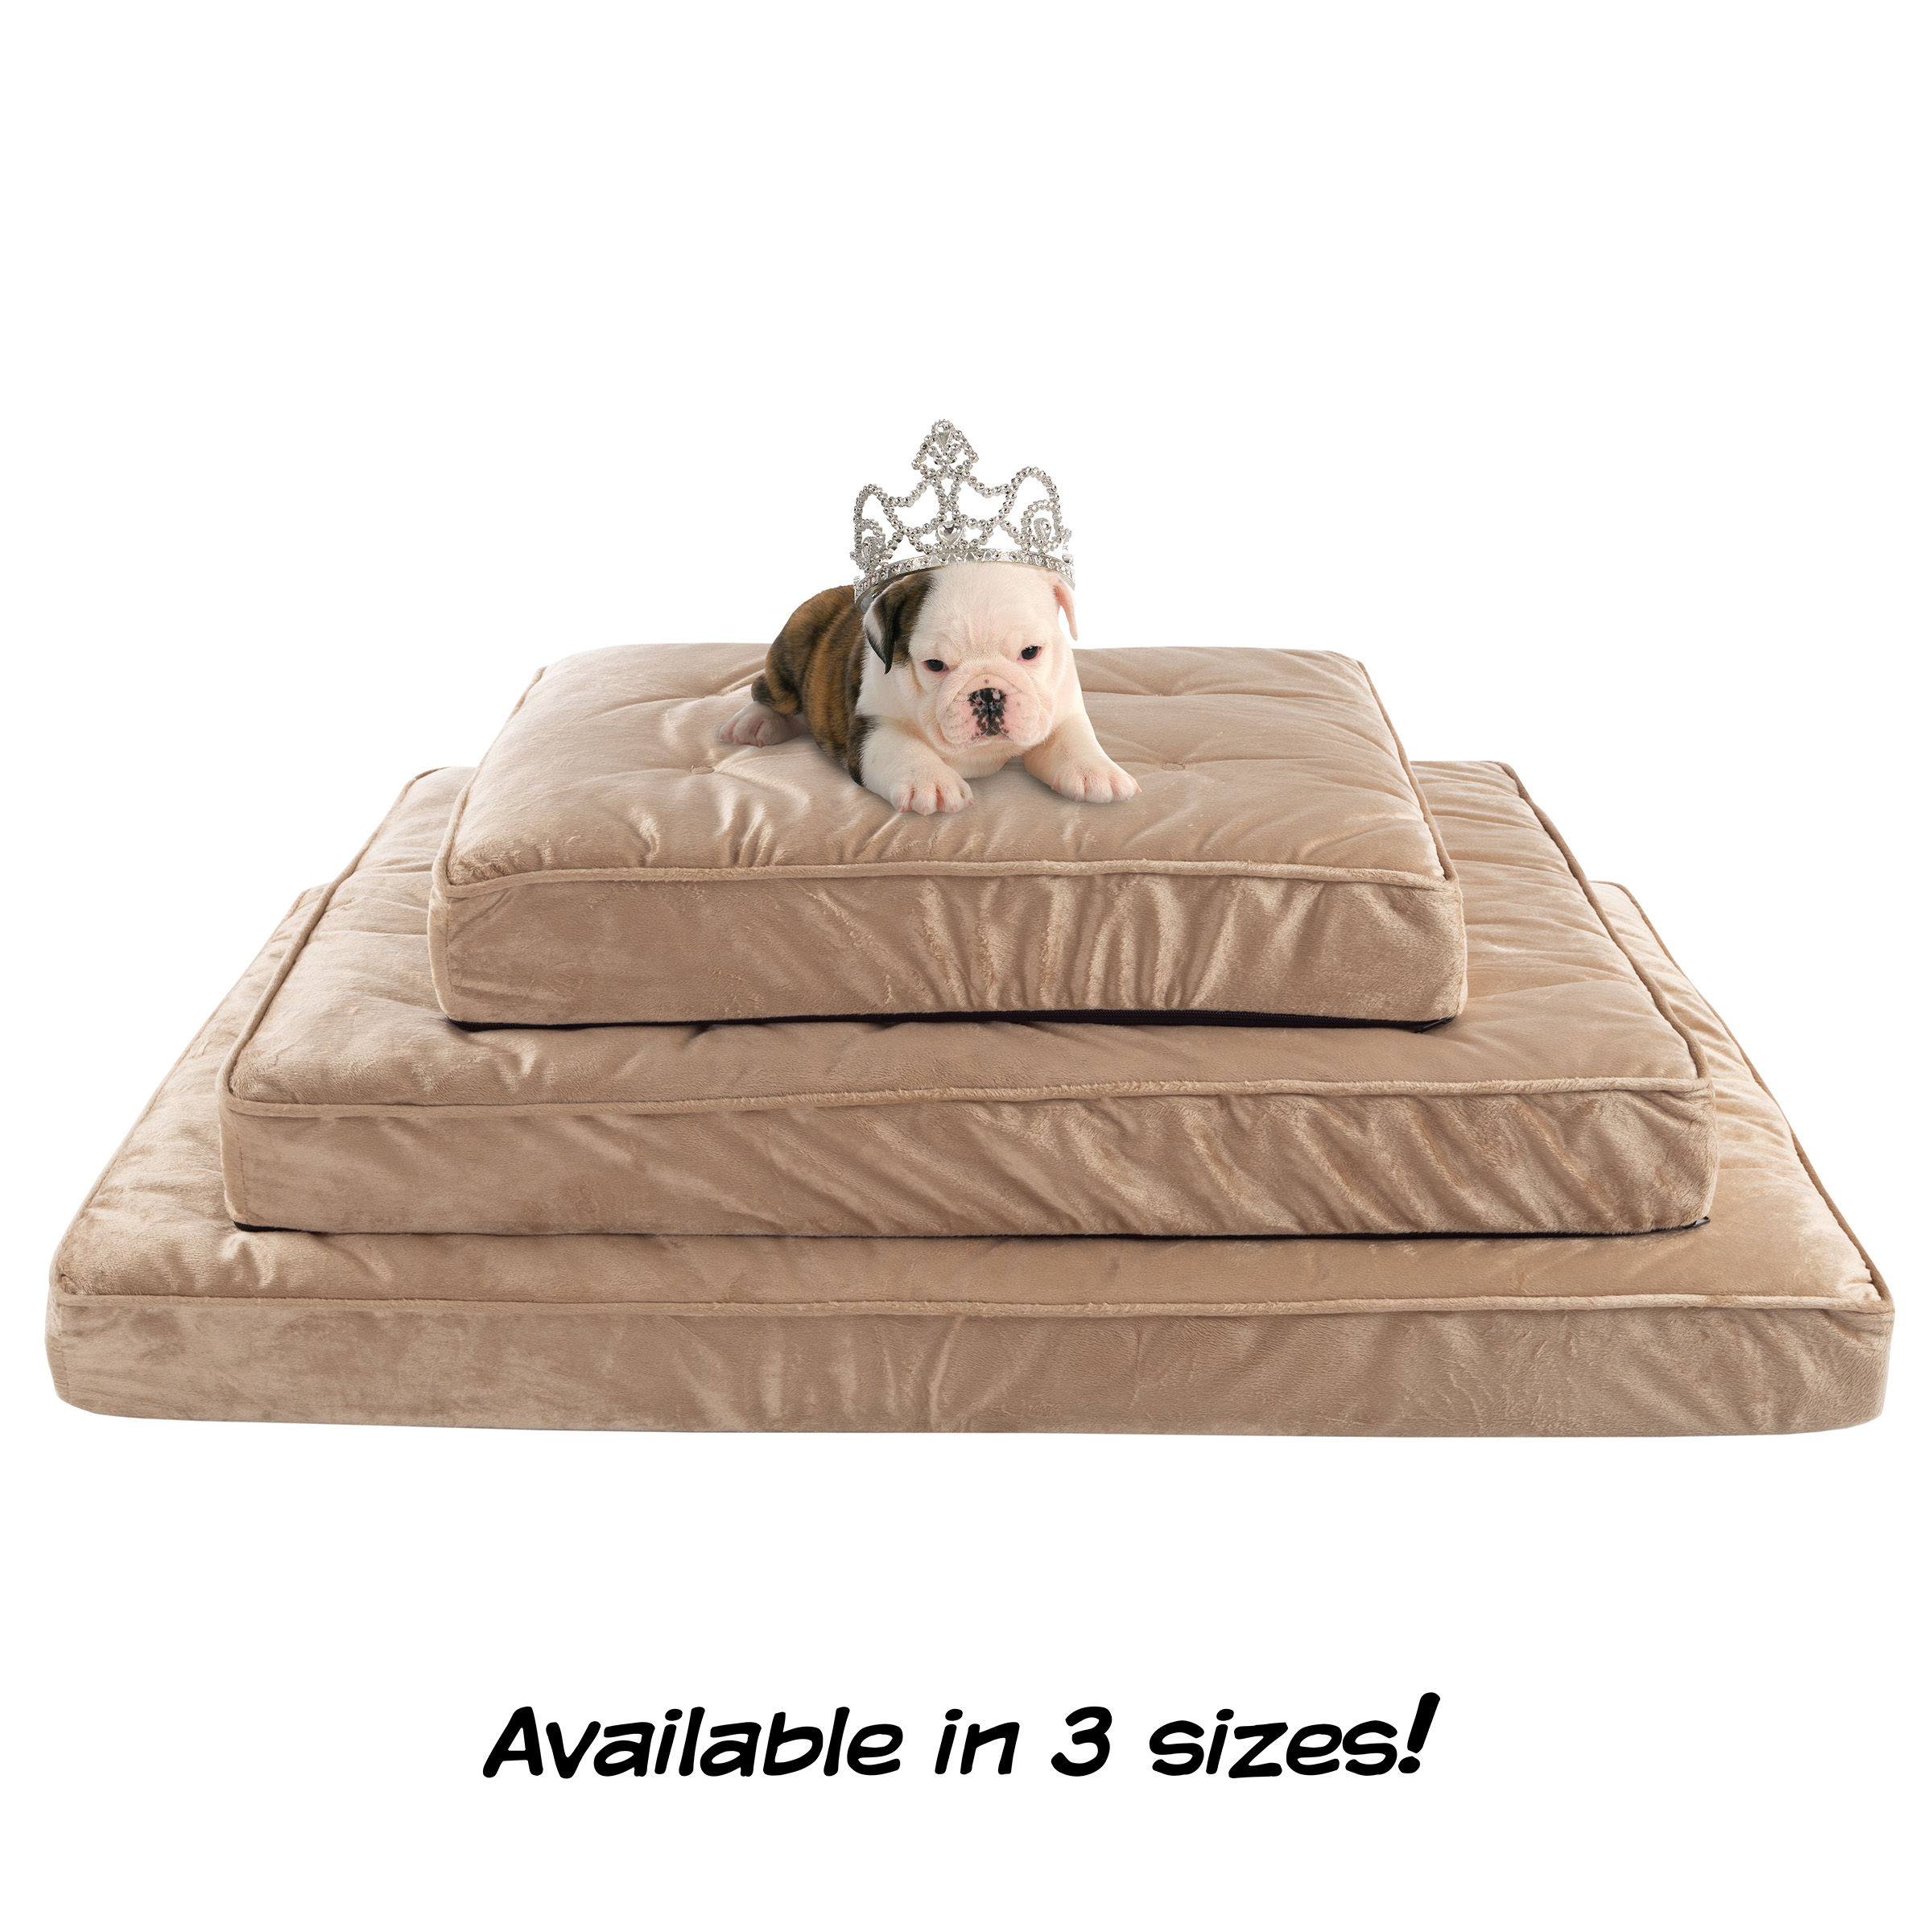 Pet Bed â Egg Crate 100% Memory Foam Orthopedic Cushion With Quilted Water-Resistant Nonslip, Machine Washable Cover - 37 X 24 Inches